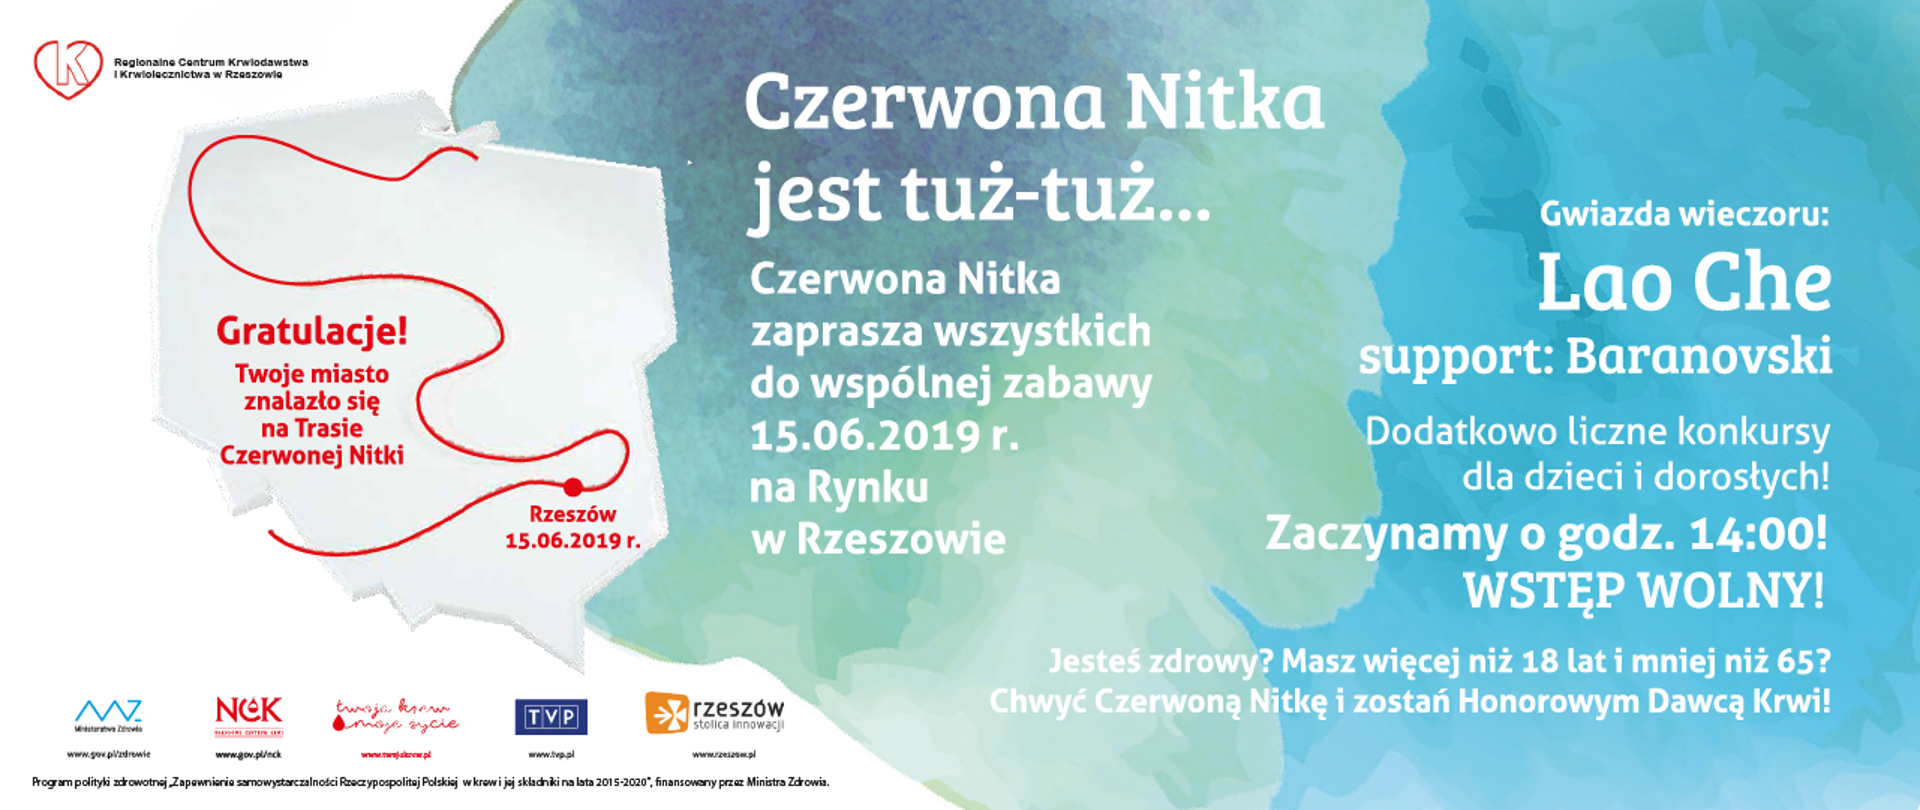 W 2019 roku "Trasa Czerwonej Nitki" zawita do Rzeszowa!